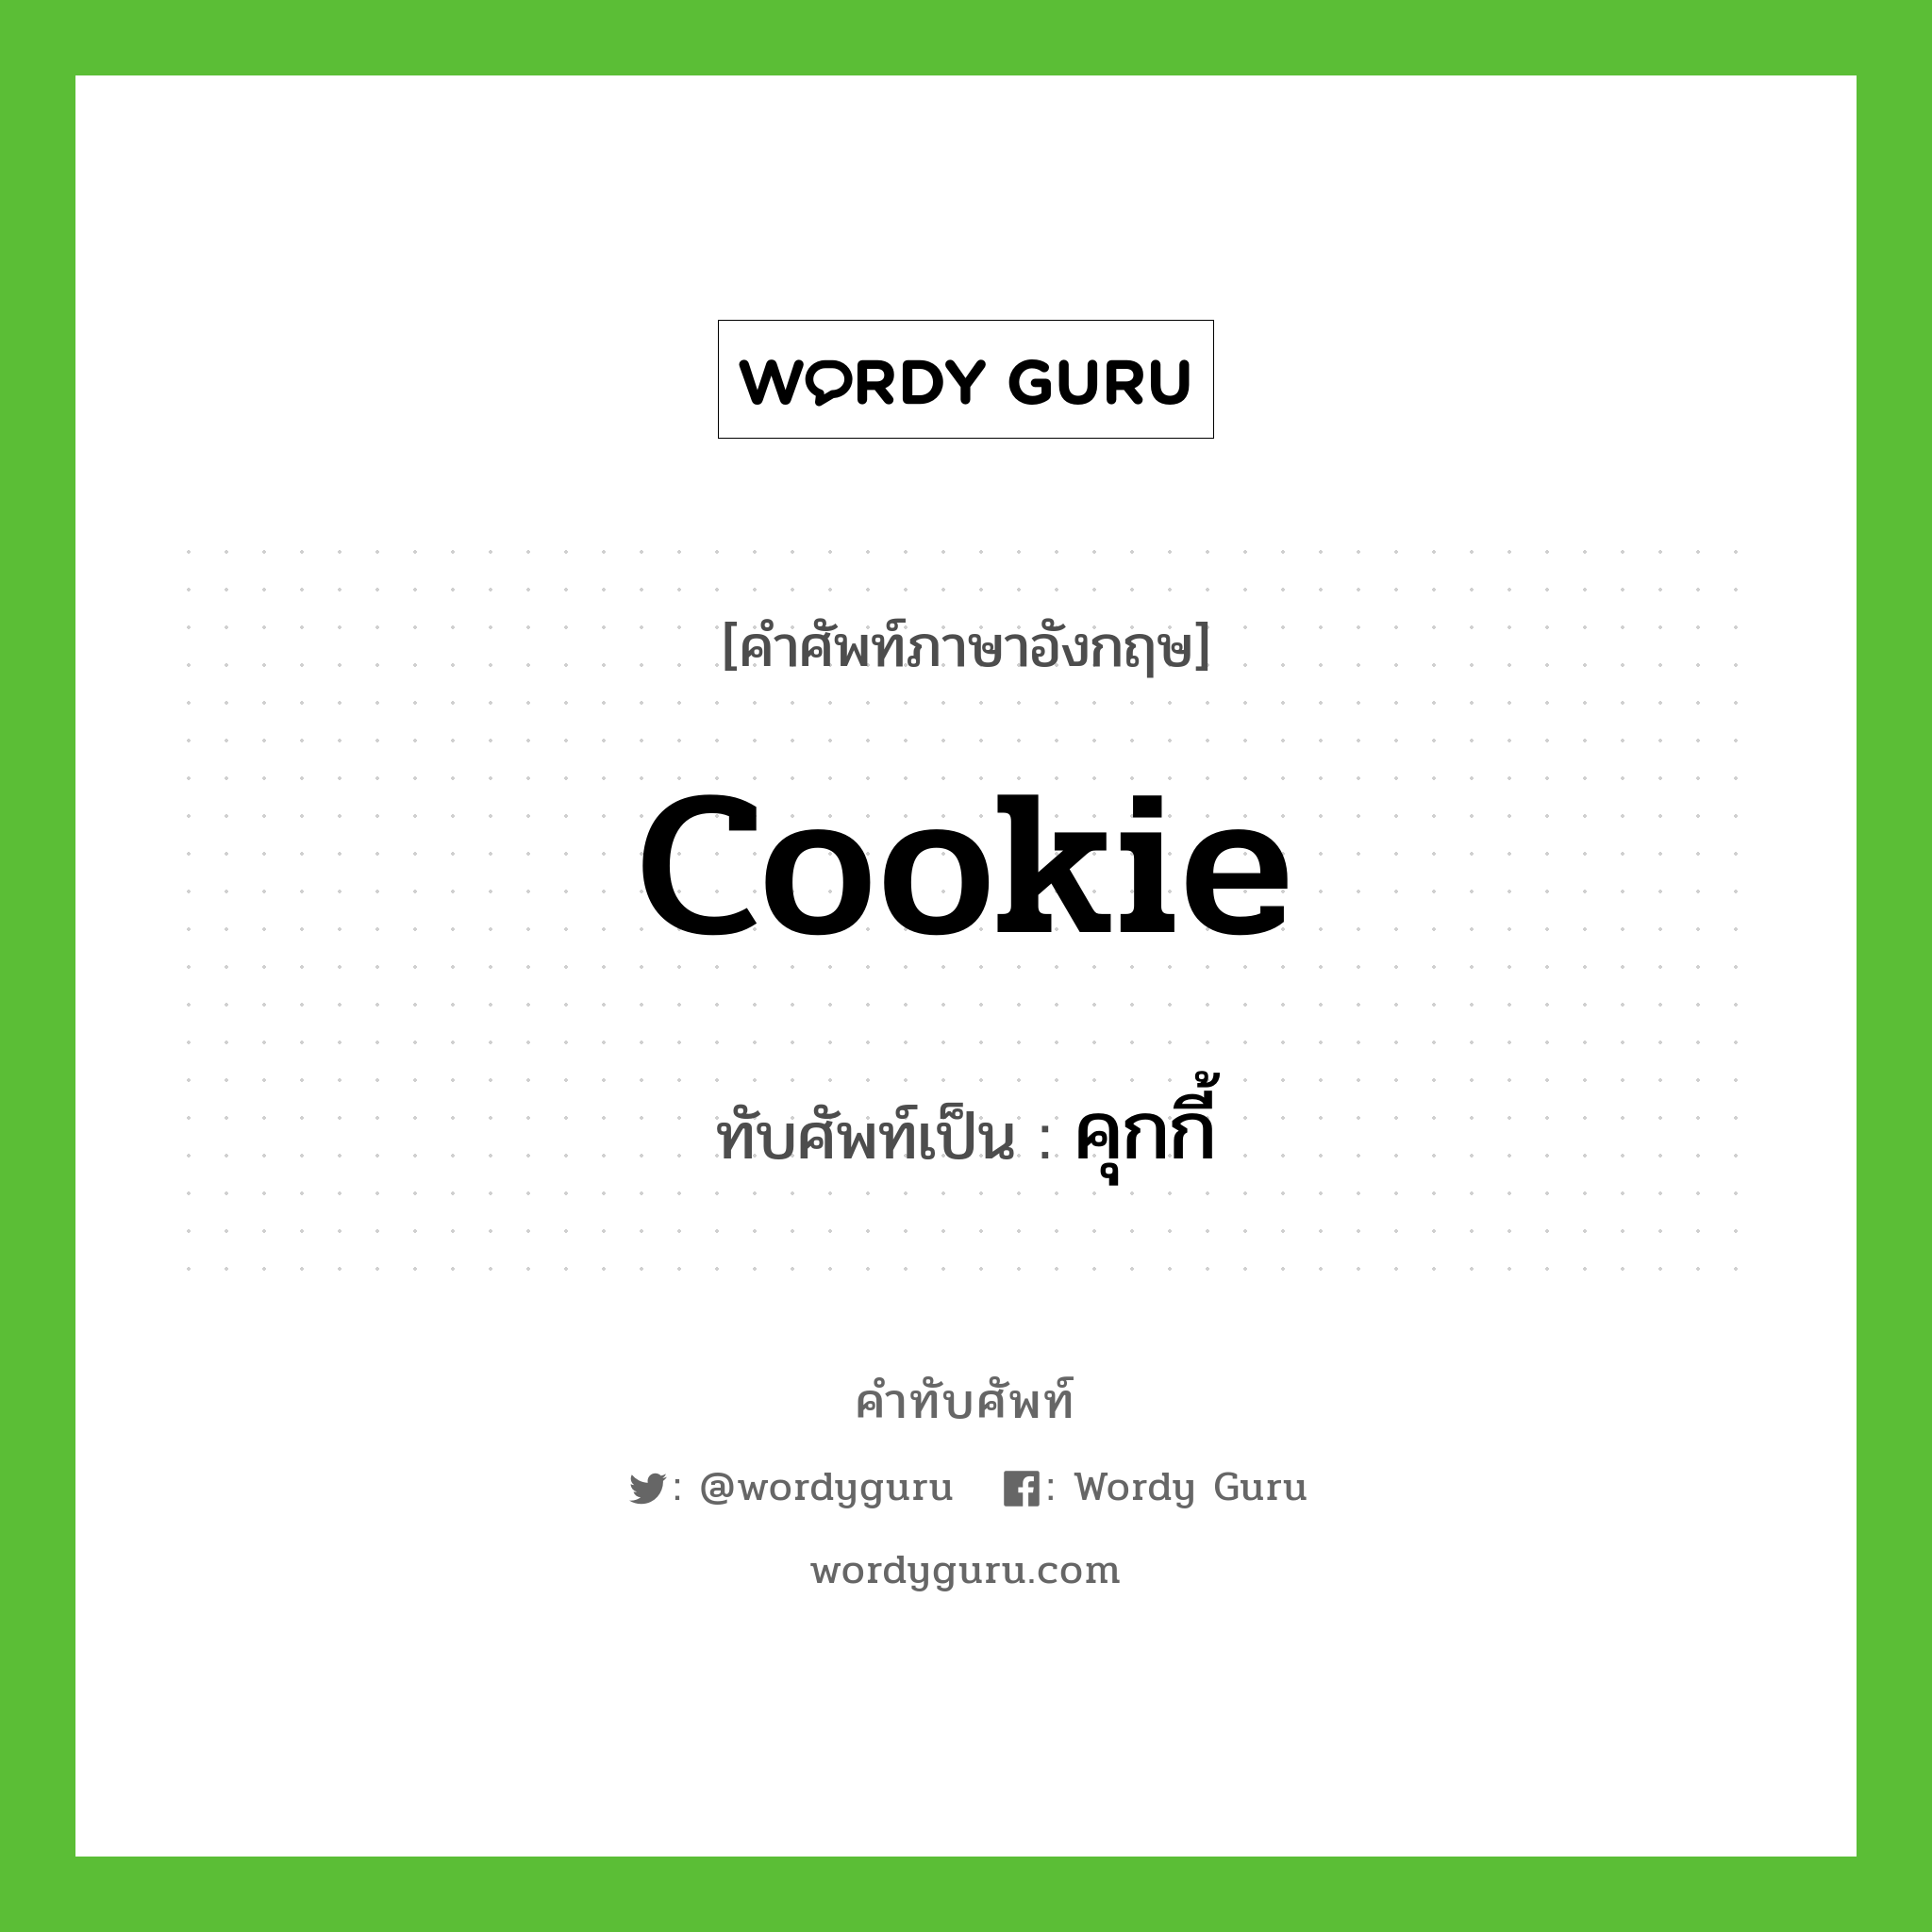 cookie เขียนเป็นคำไทยว่าอะไร?, คำศัพท์ภาษาอังกฤษ cookie ทับศัพท์เป็น คุกกี้